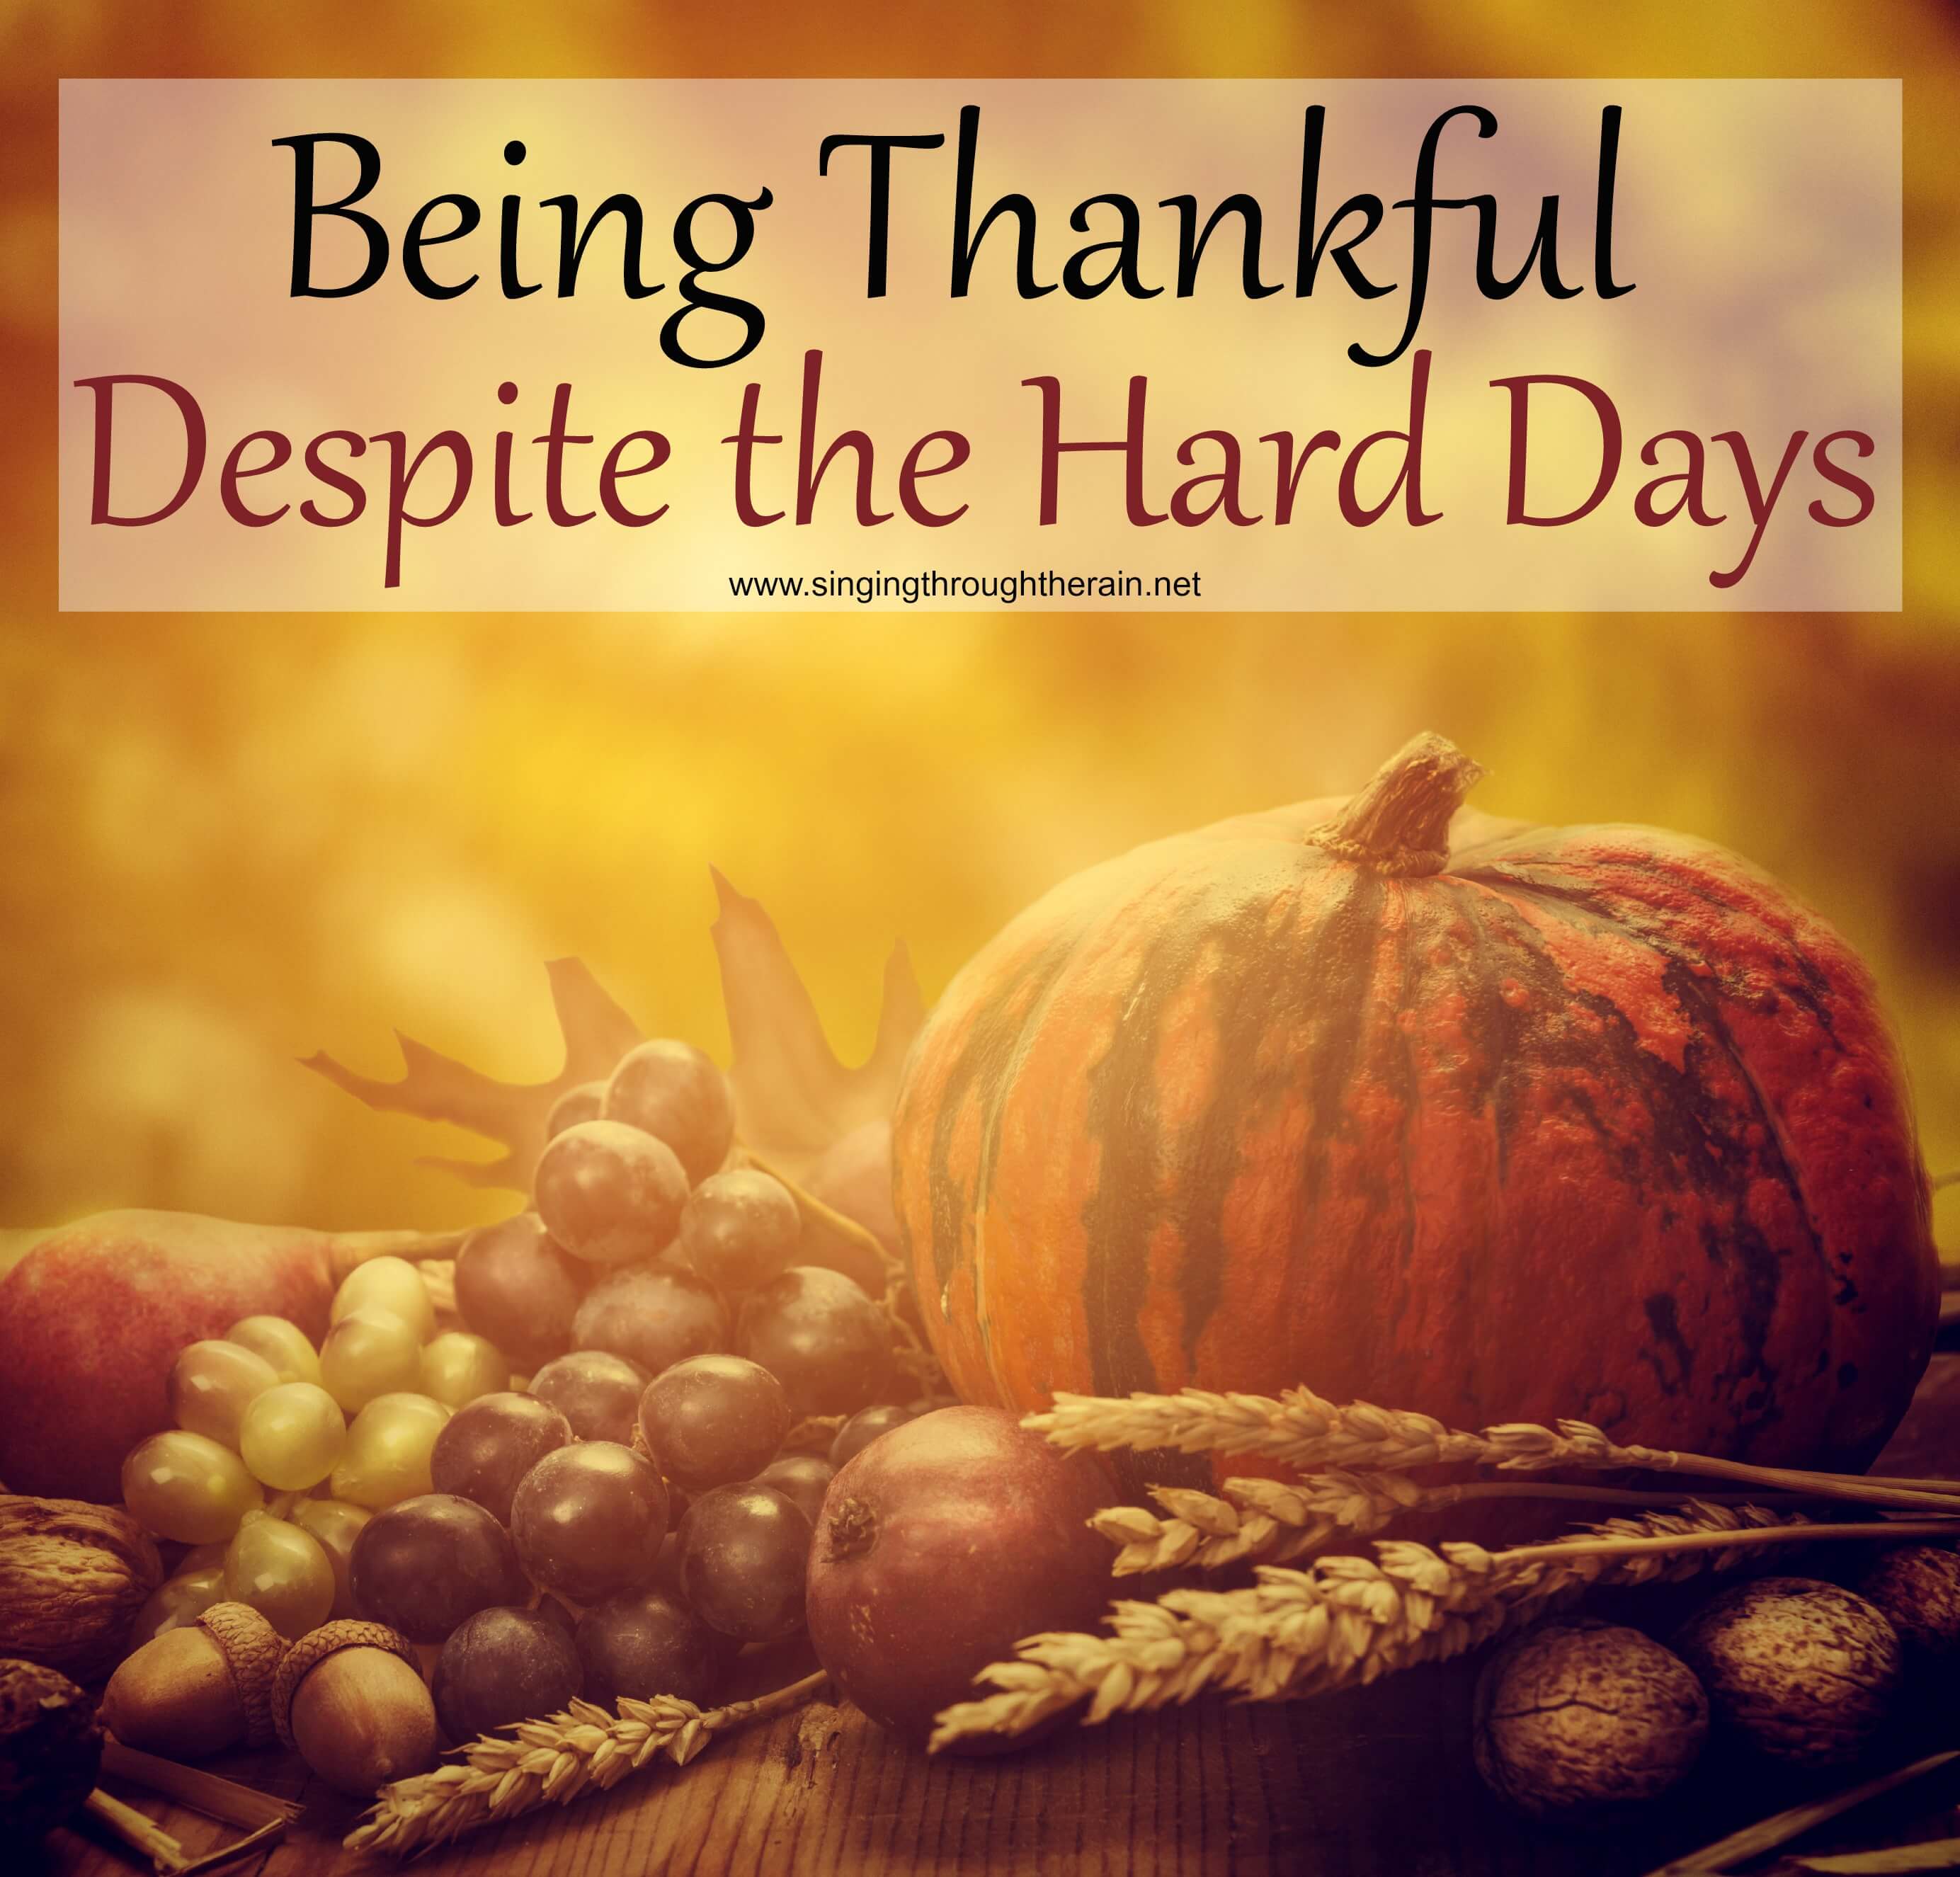 Being Thankful Despite the Hard Days